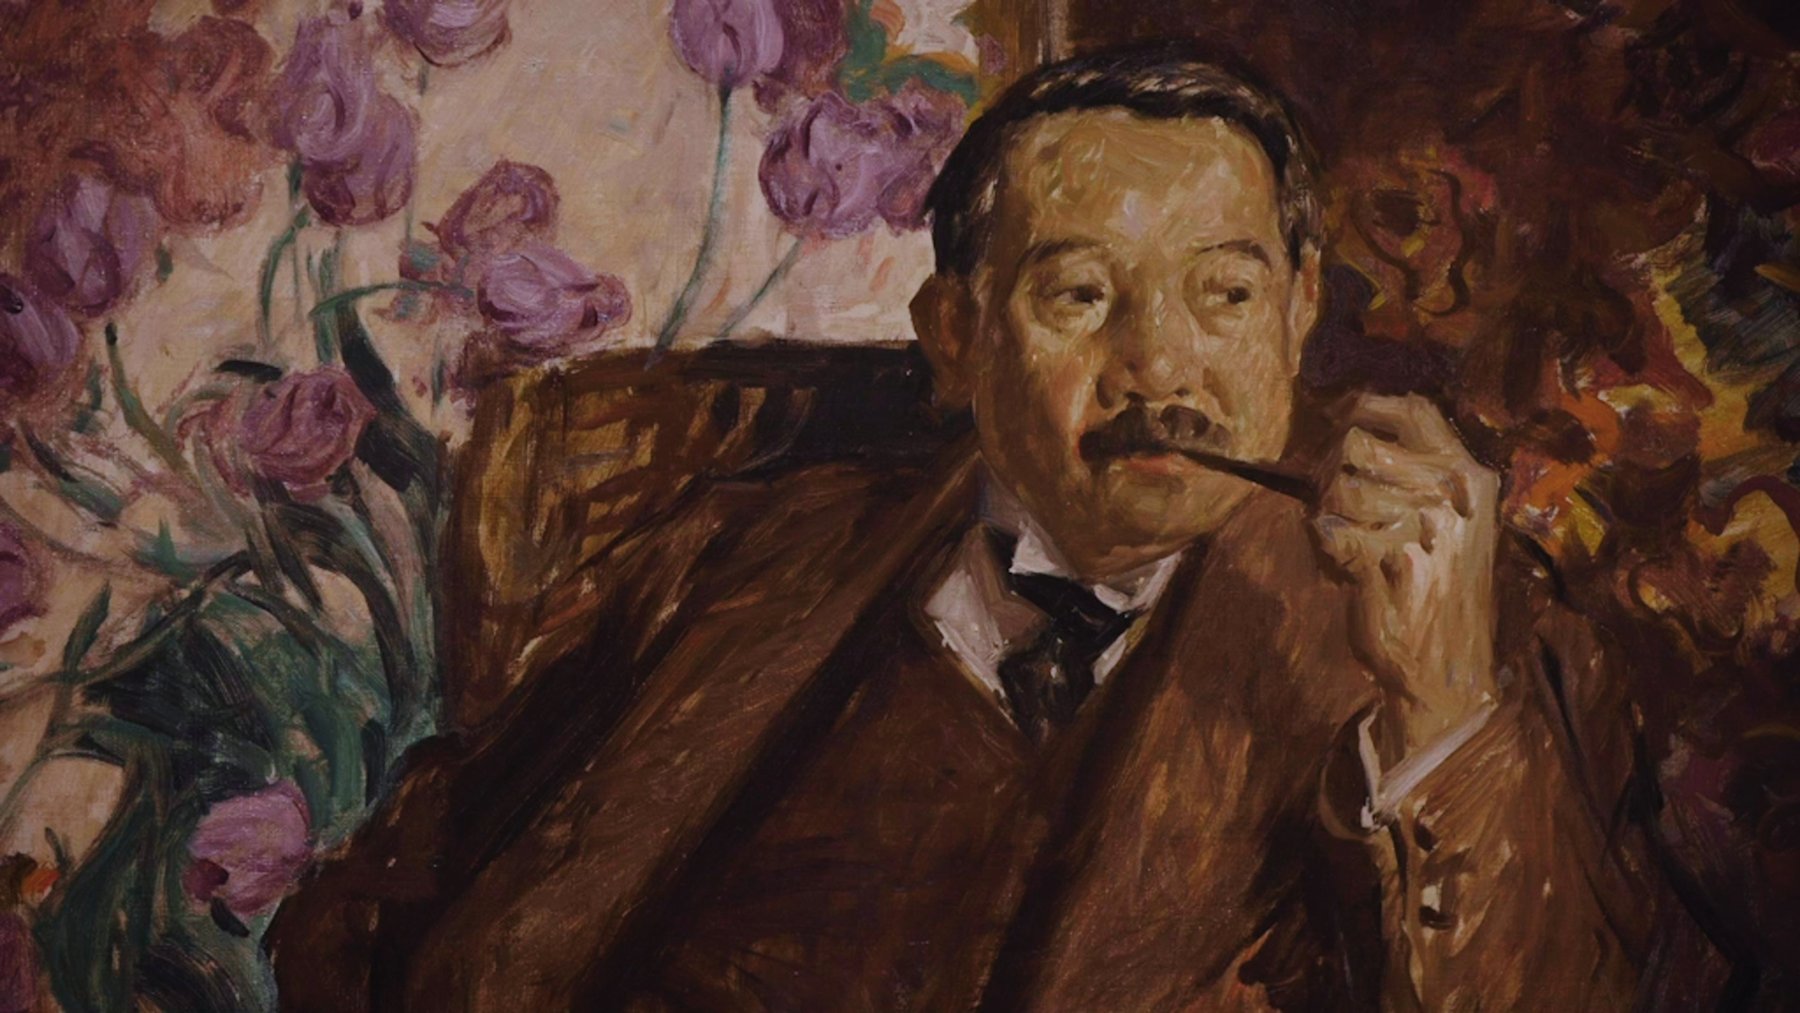 フランク・ブラングィン《松方幸次郎の肖像》1916年　油彩、カンヴァス
国立西洋美術館（旧松方コレクション）
